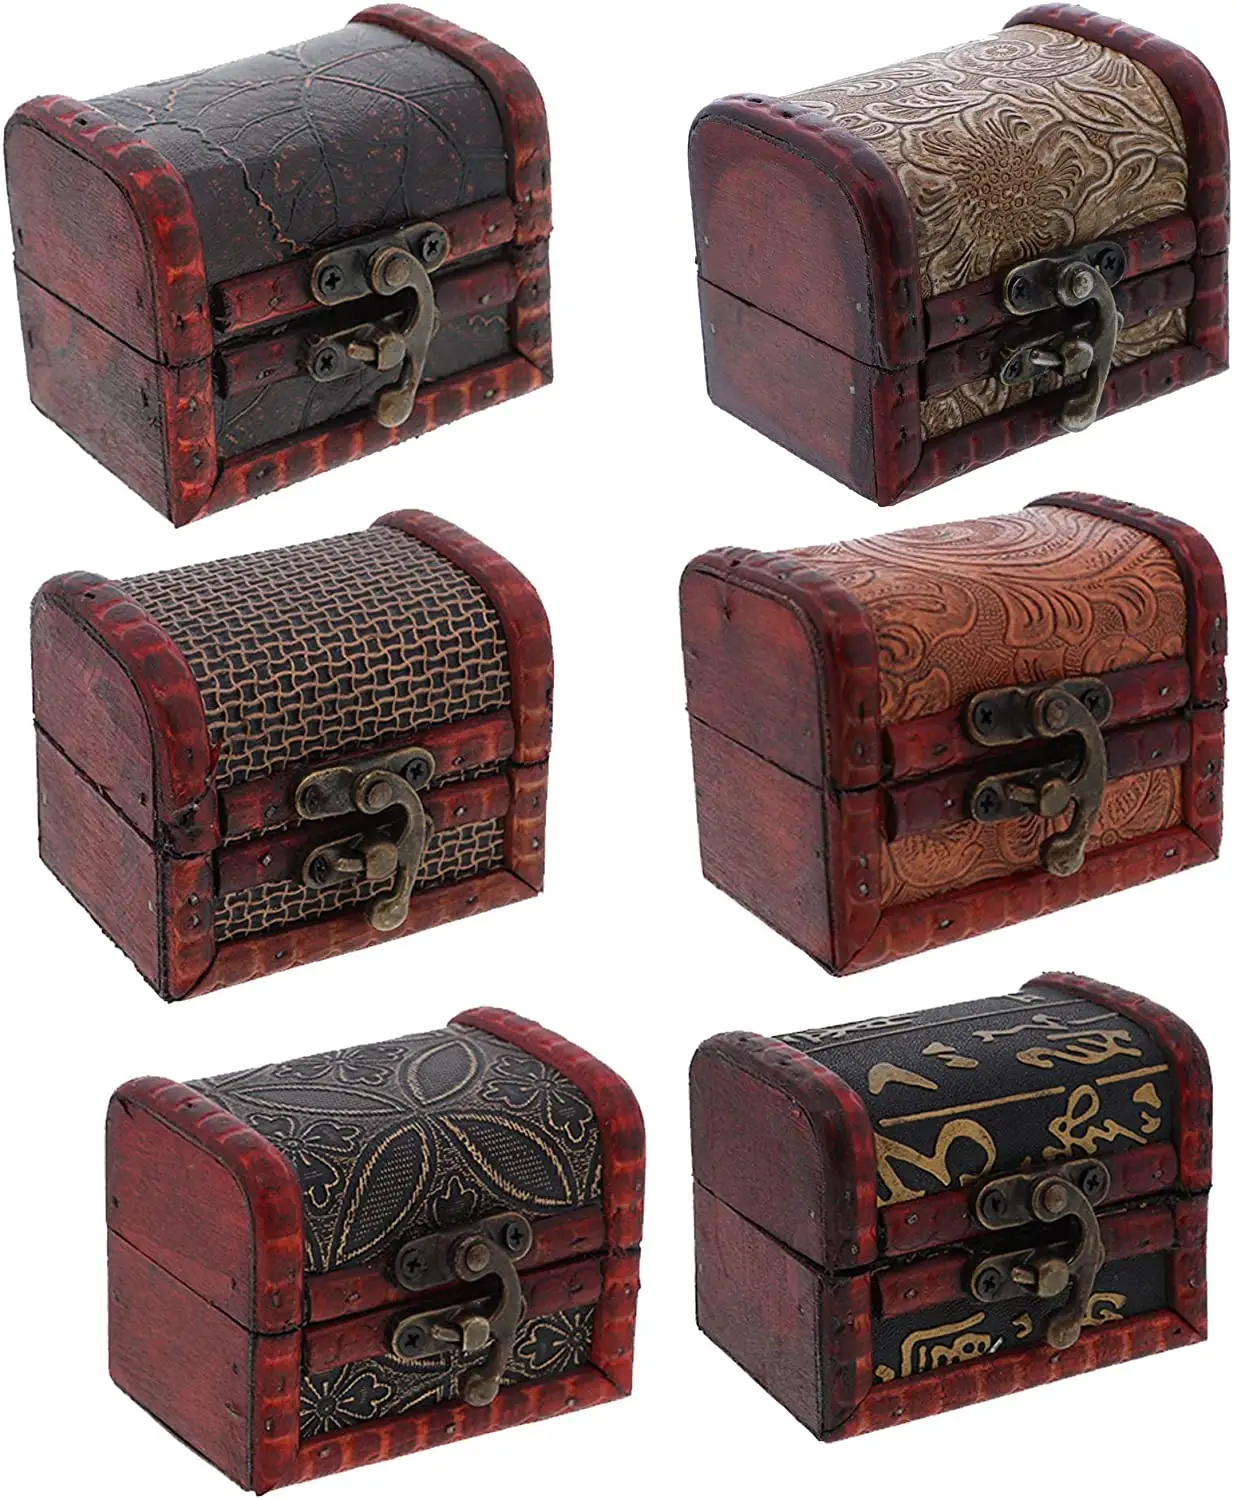 Kotak perhiasan kayu antik miniatur antik acak grosir kotak perhiasan kayu Steampunk perhiasan kotak kayu